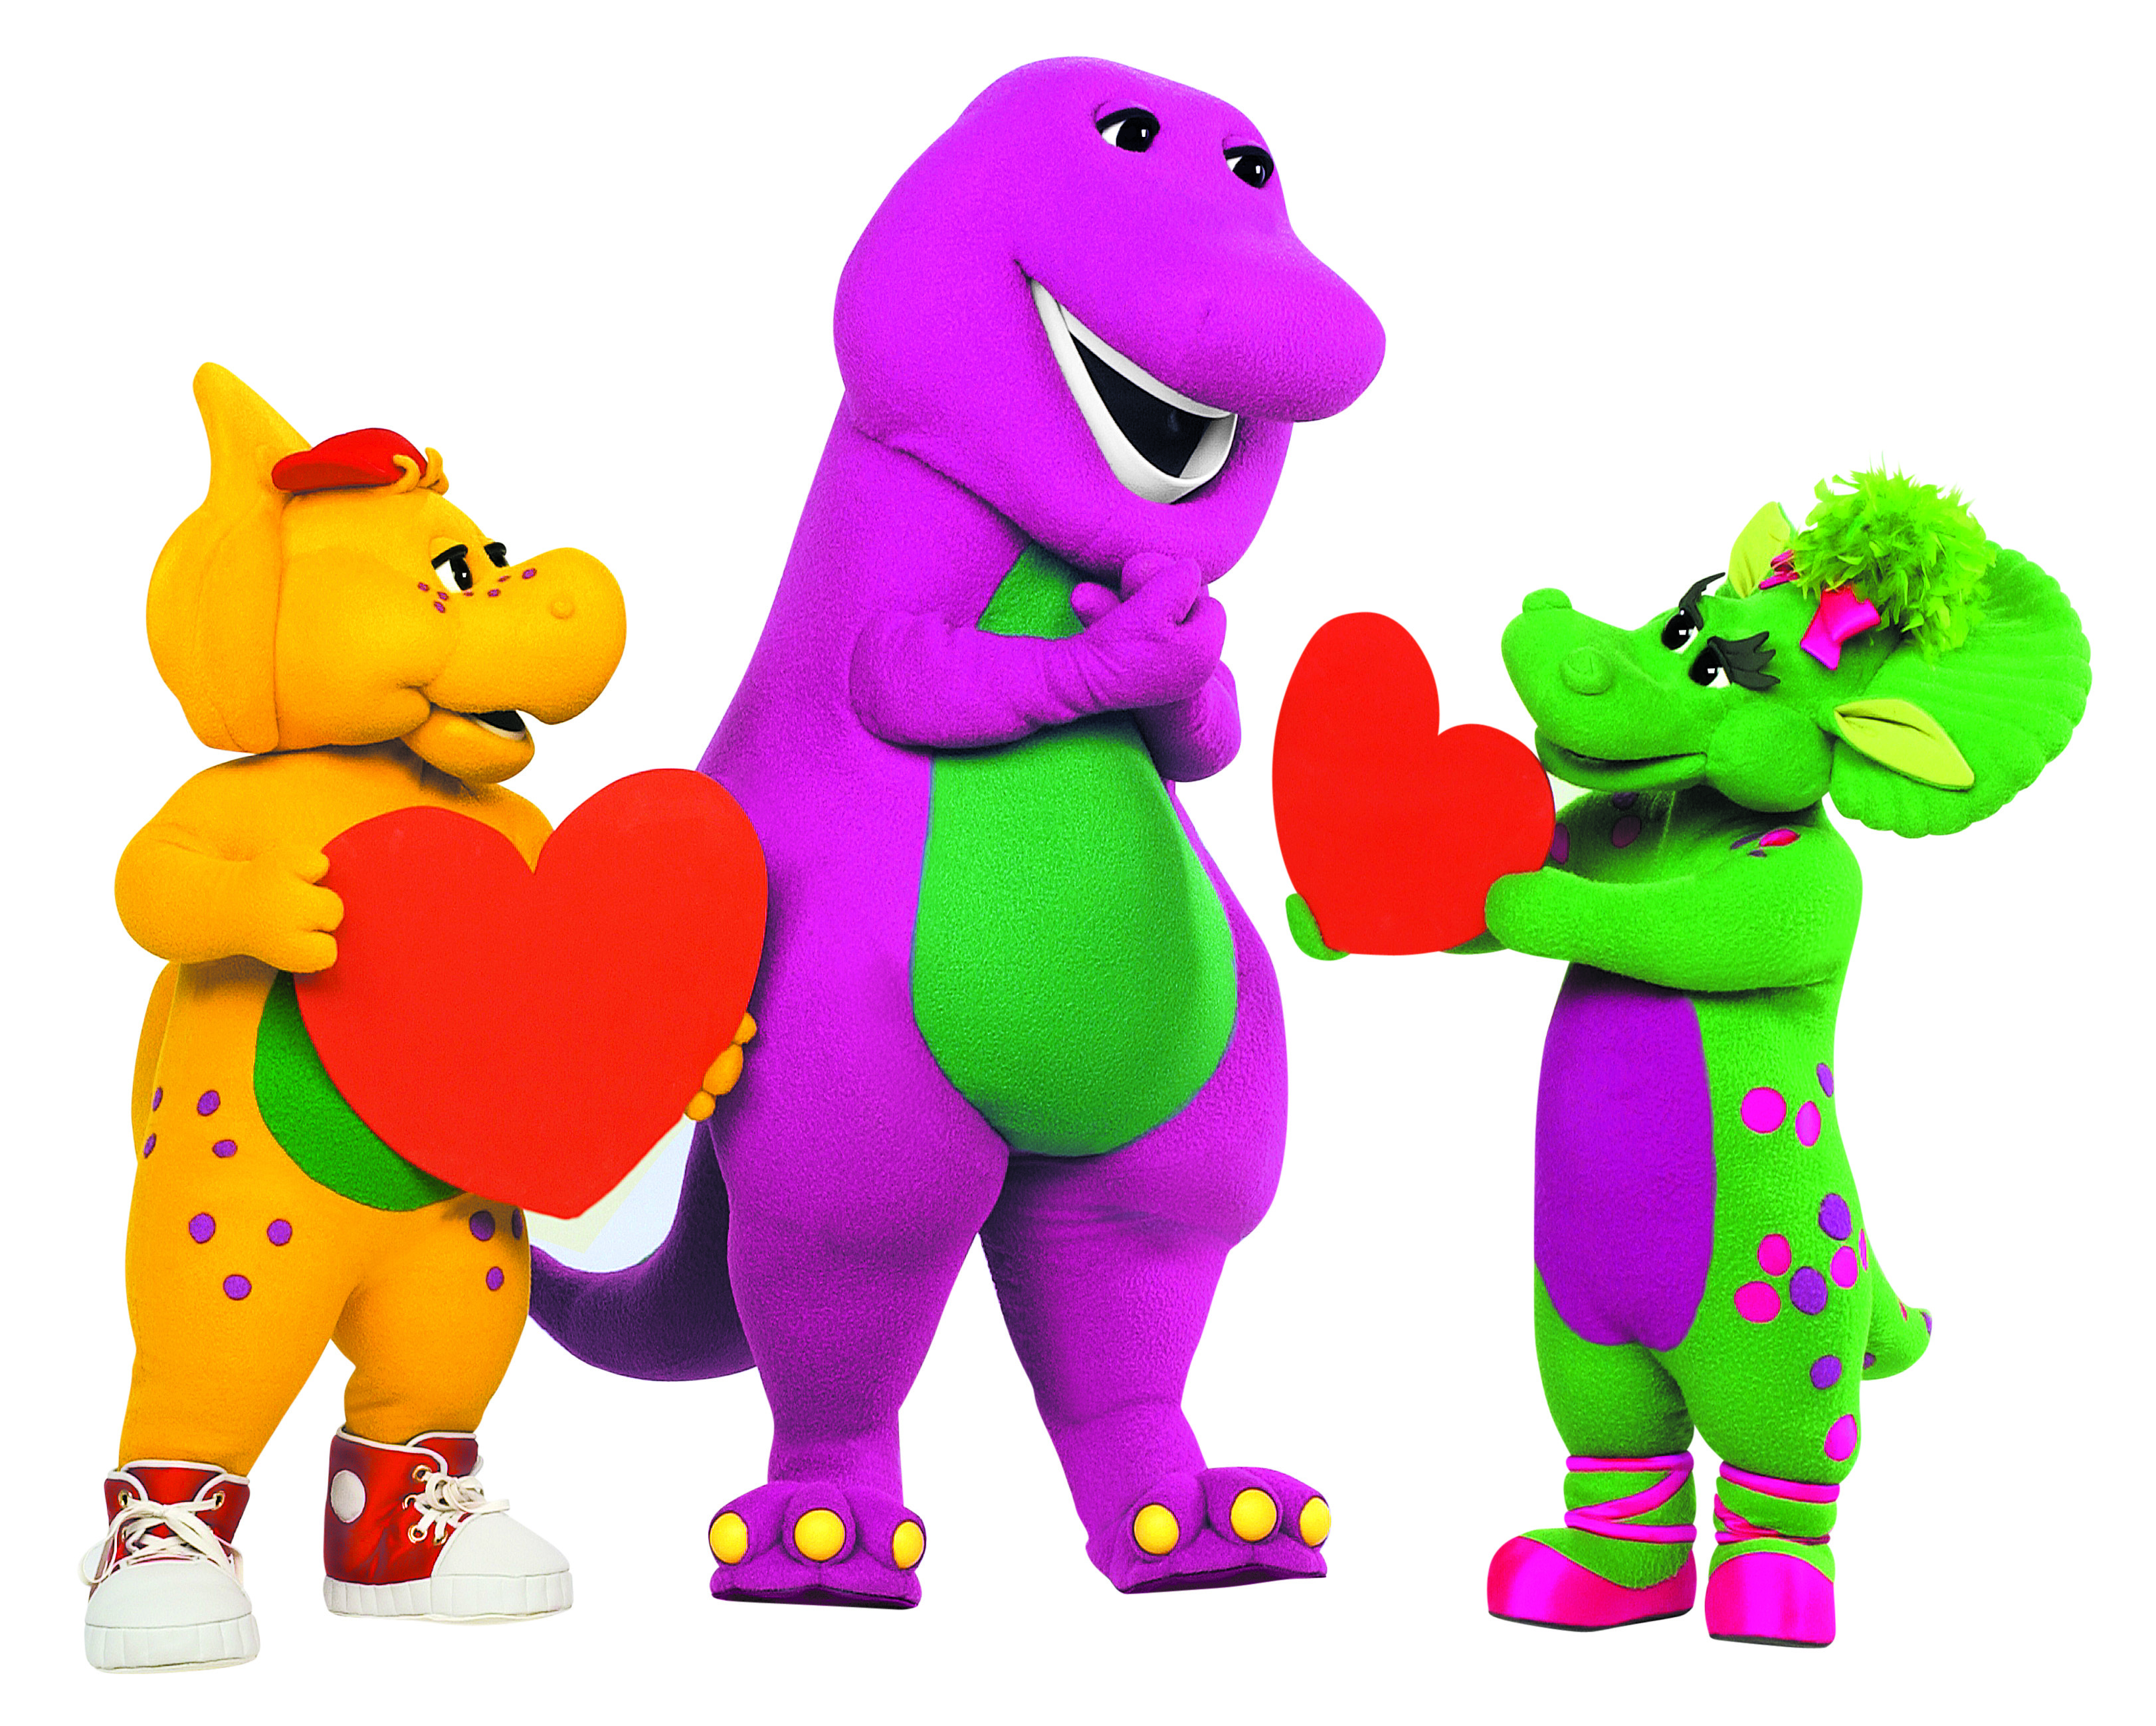 Barney & Friends.